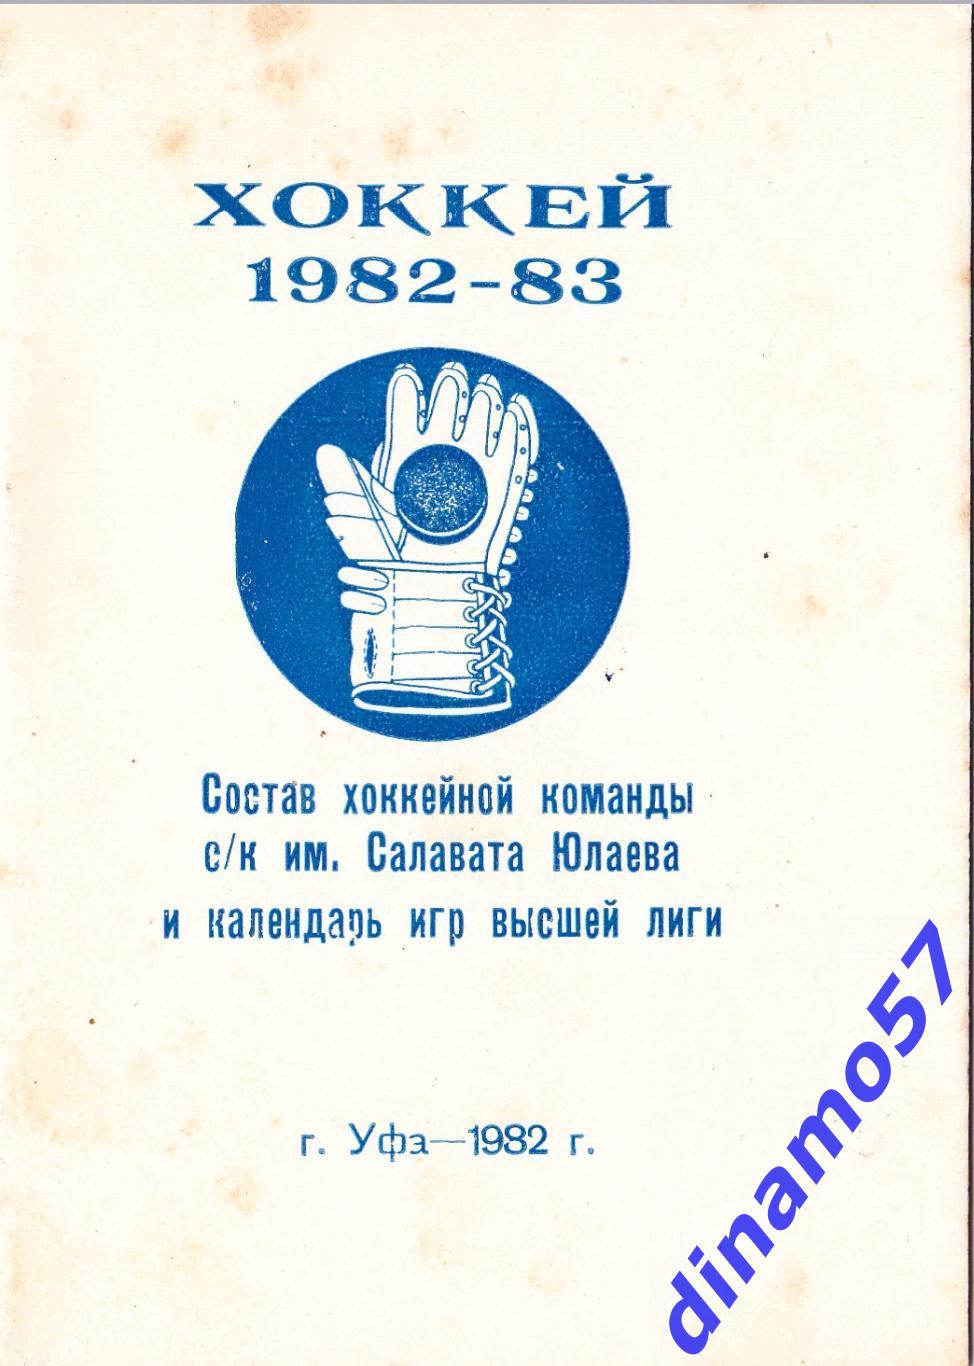 Хоккей. Уфа - Календарь игр 1982-1983